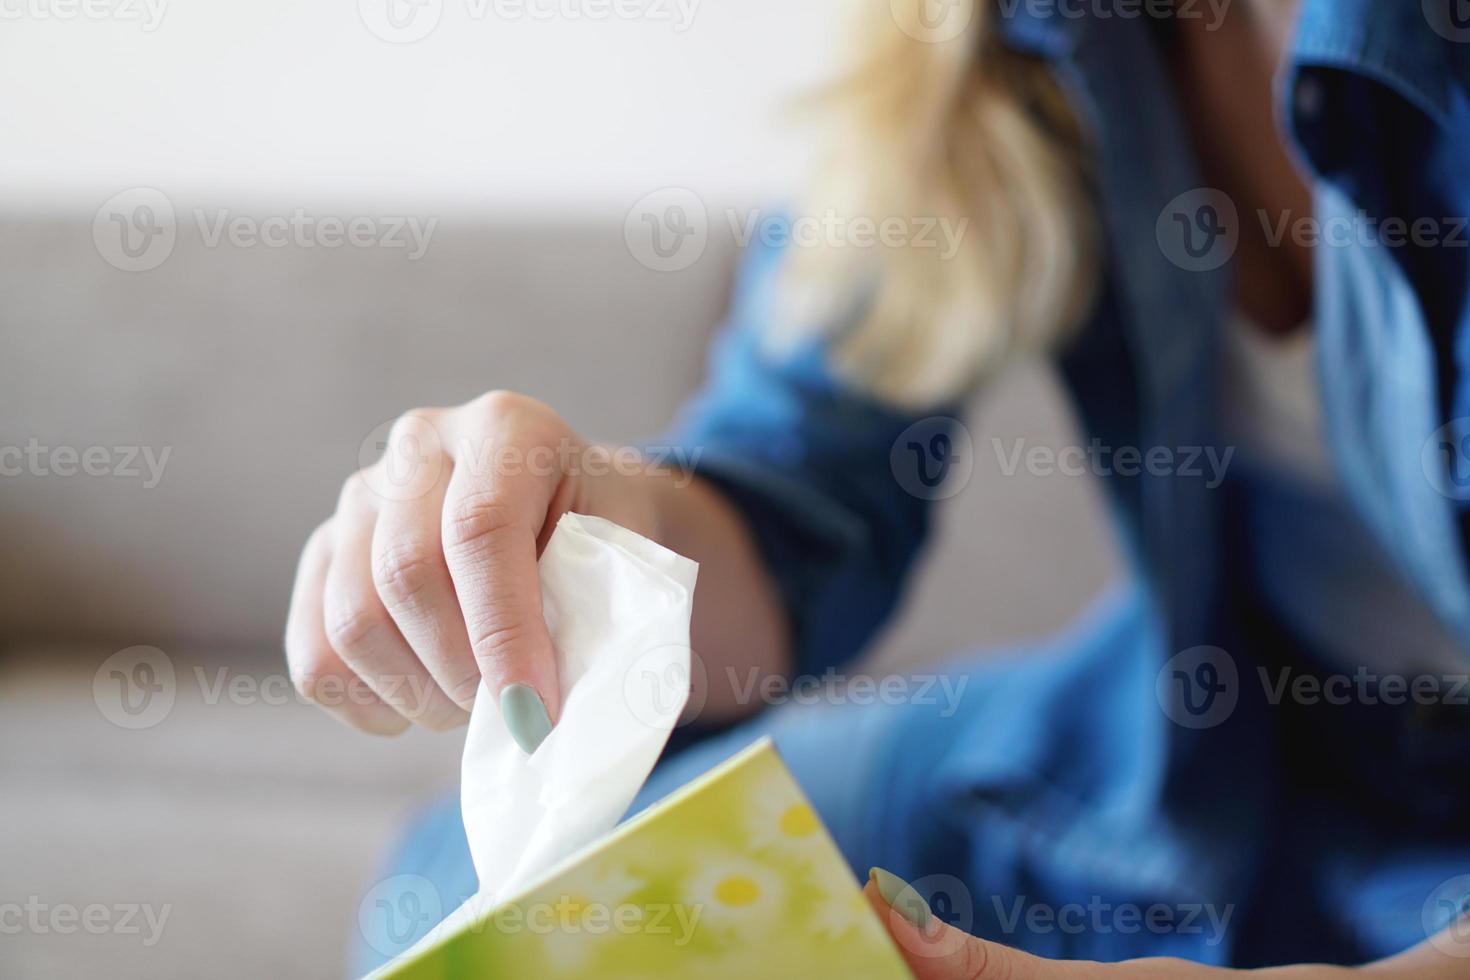 femme prenant un mouchoir en papier du porte-serviettes sur la table photo